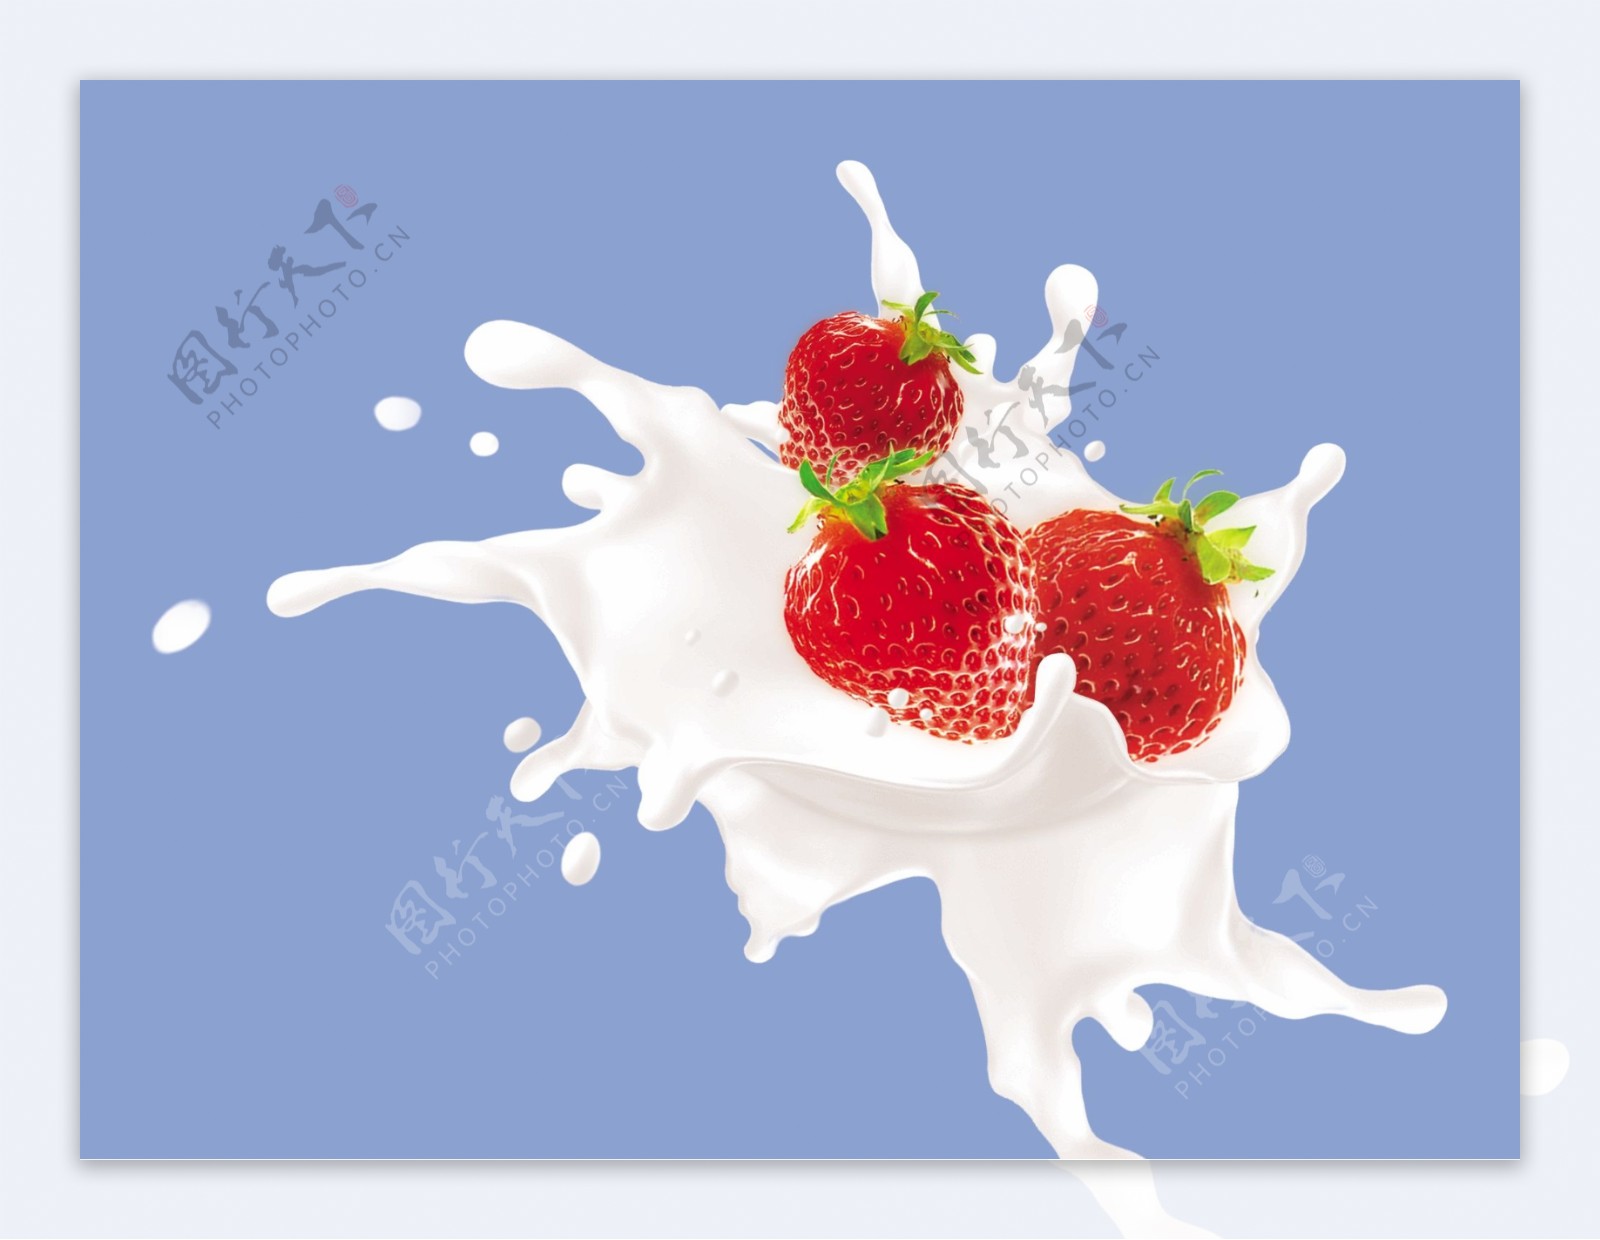 溅起的草莓牛奶